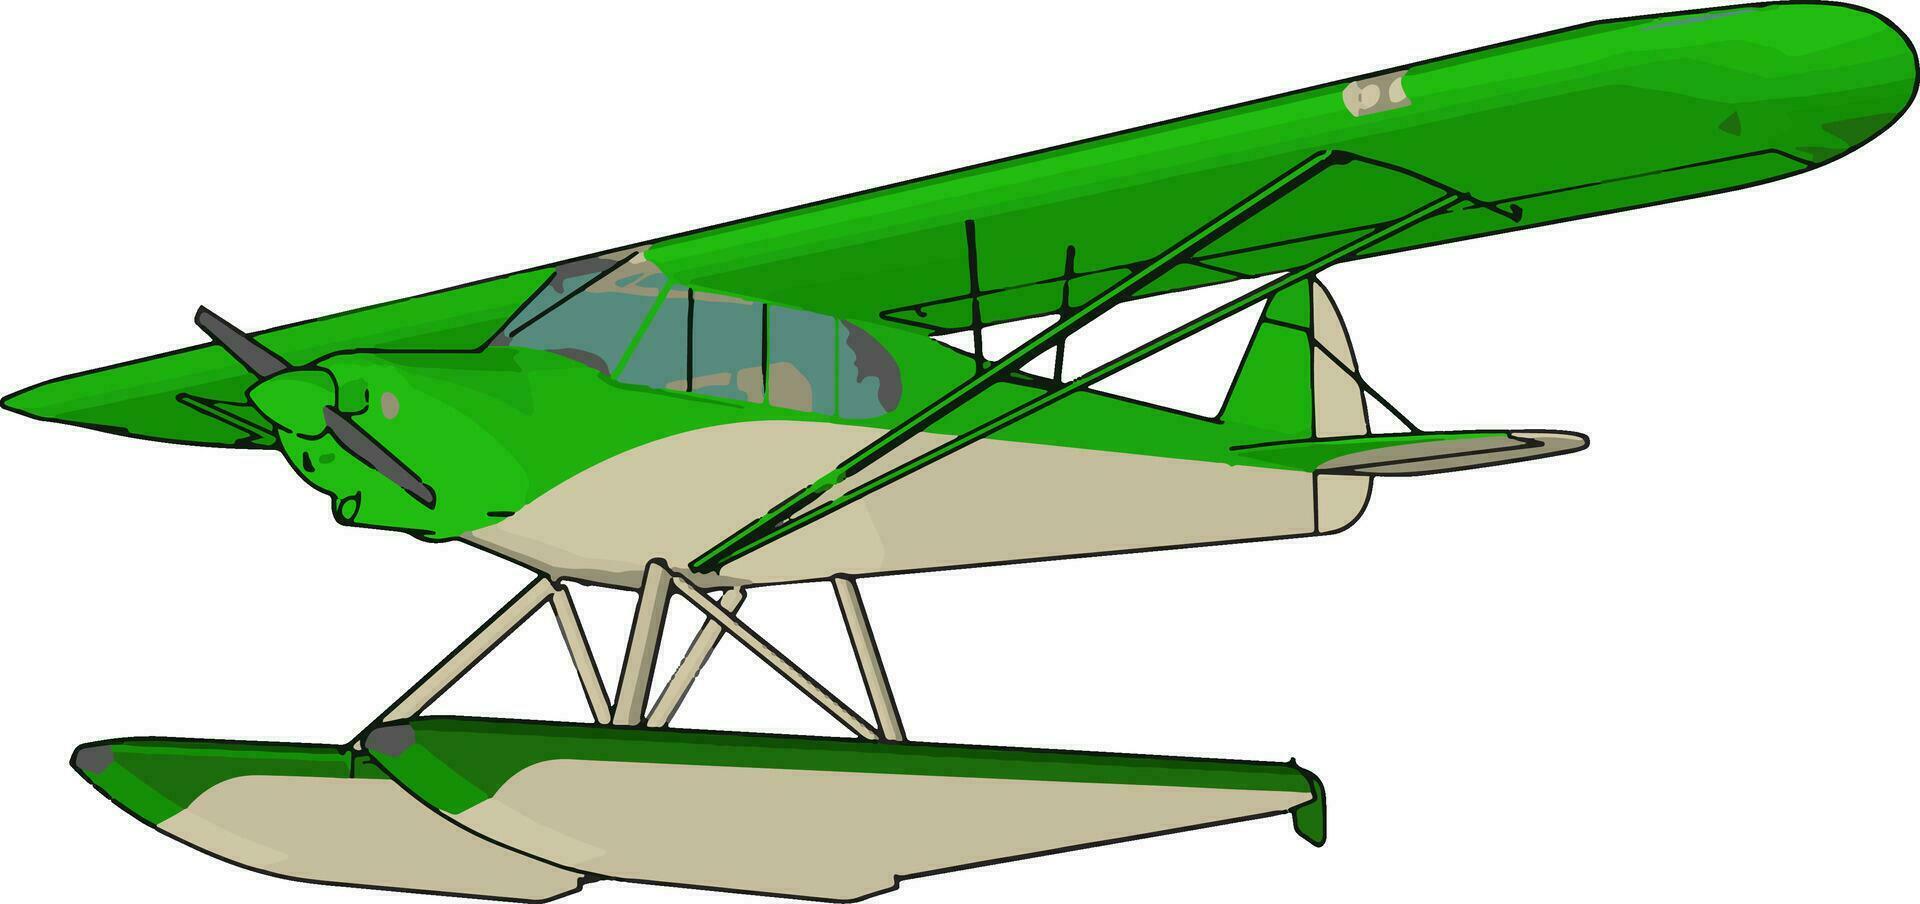 hidroavión verde, ilustración, vector sobre fondo blanco.